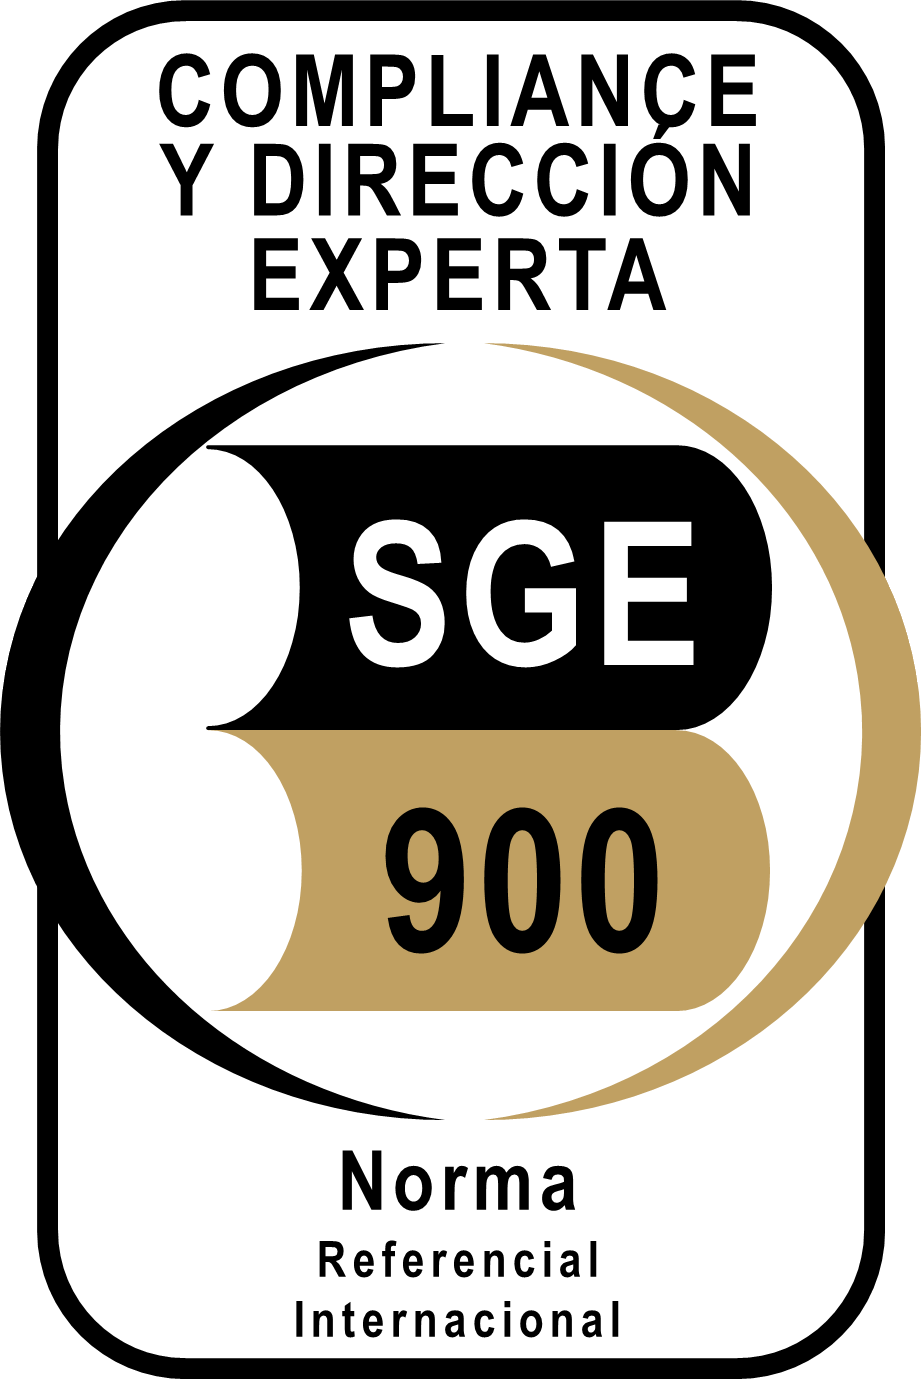 Compliance y Dirección Experta - SGE 900